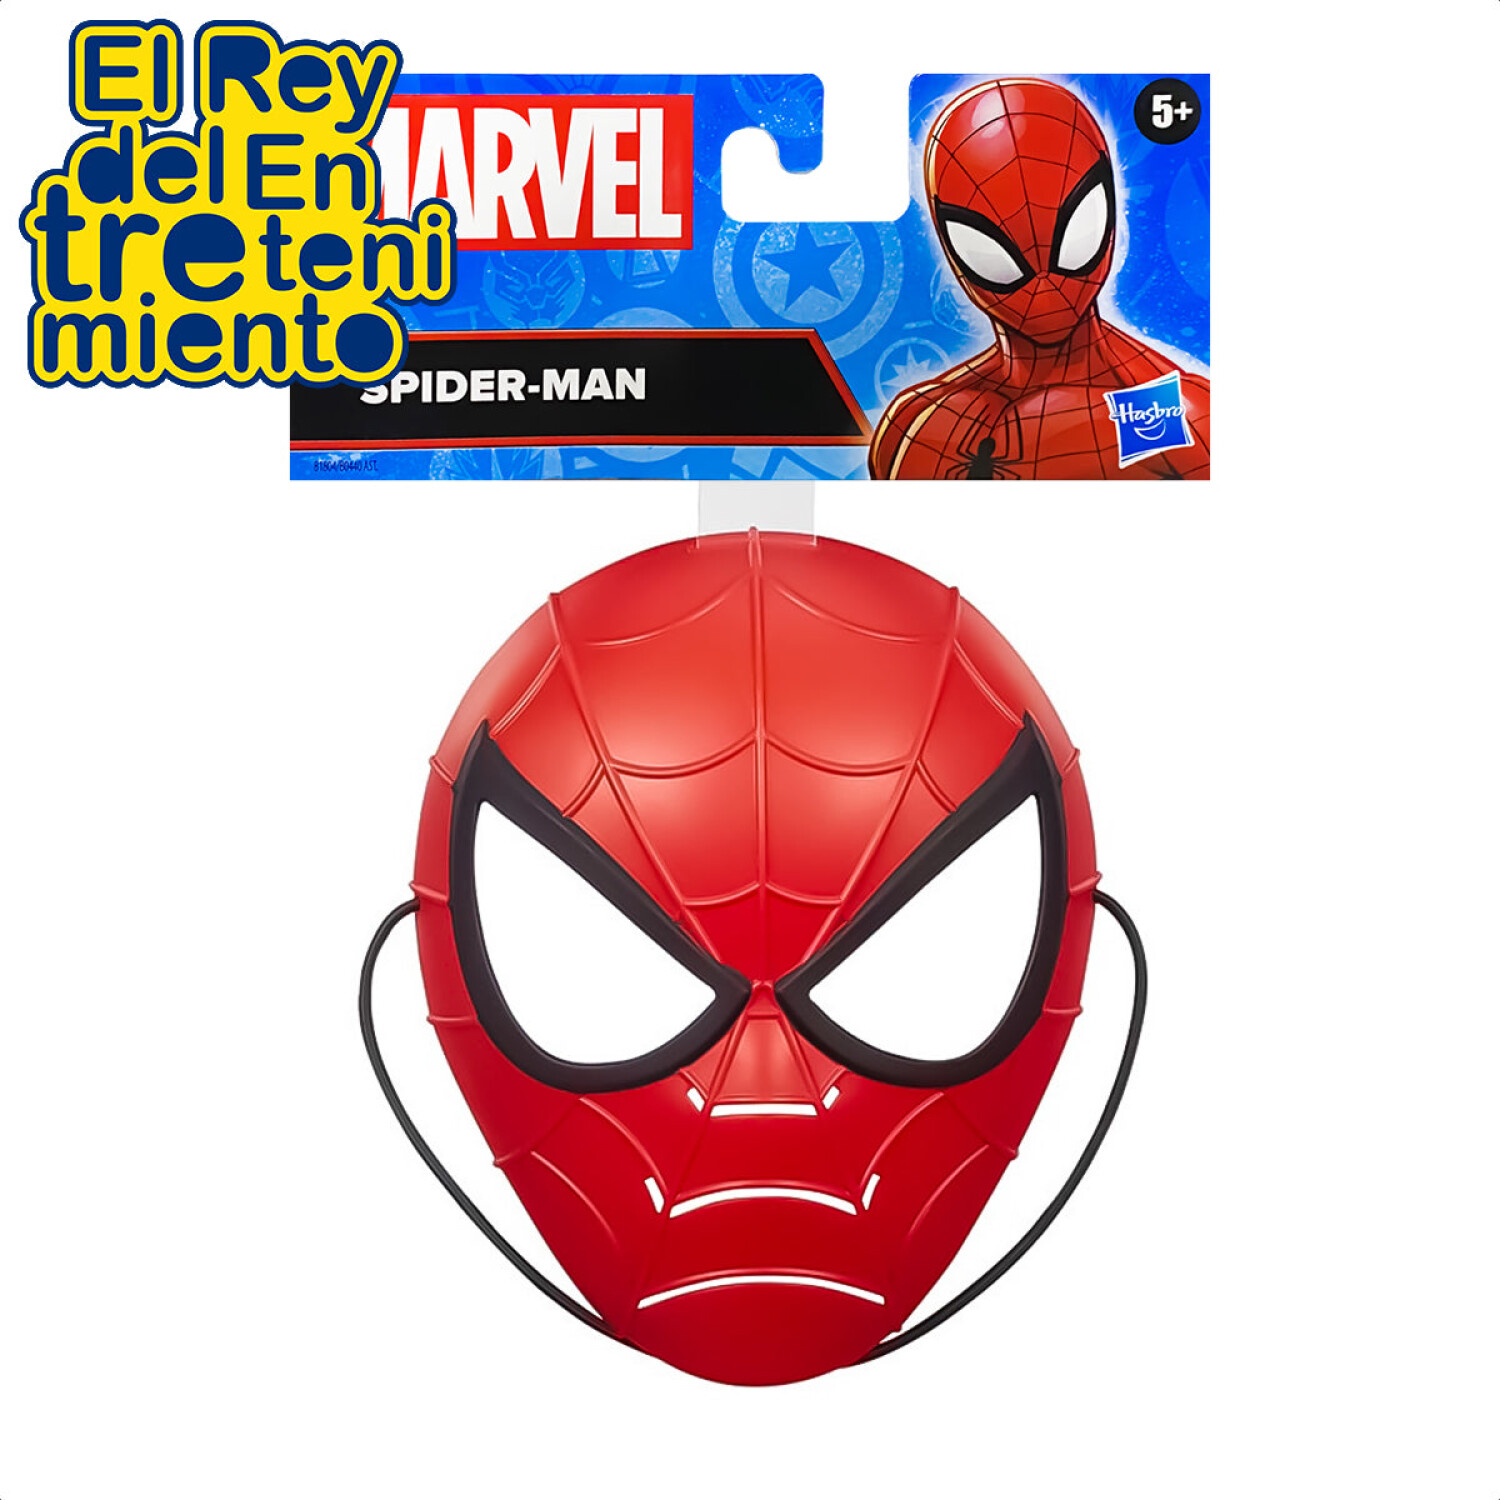 Máscara Hasbro Marvel Avengers Ironman Spiderman Hulk - Spiderman — El Rey  del entretenimiento